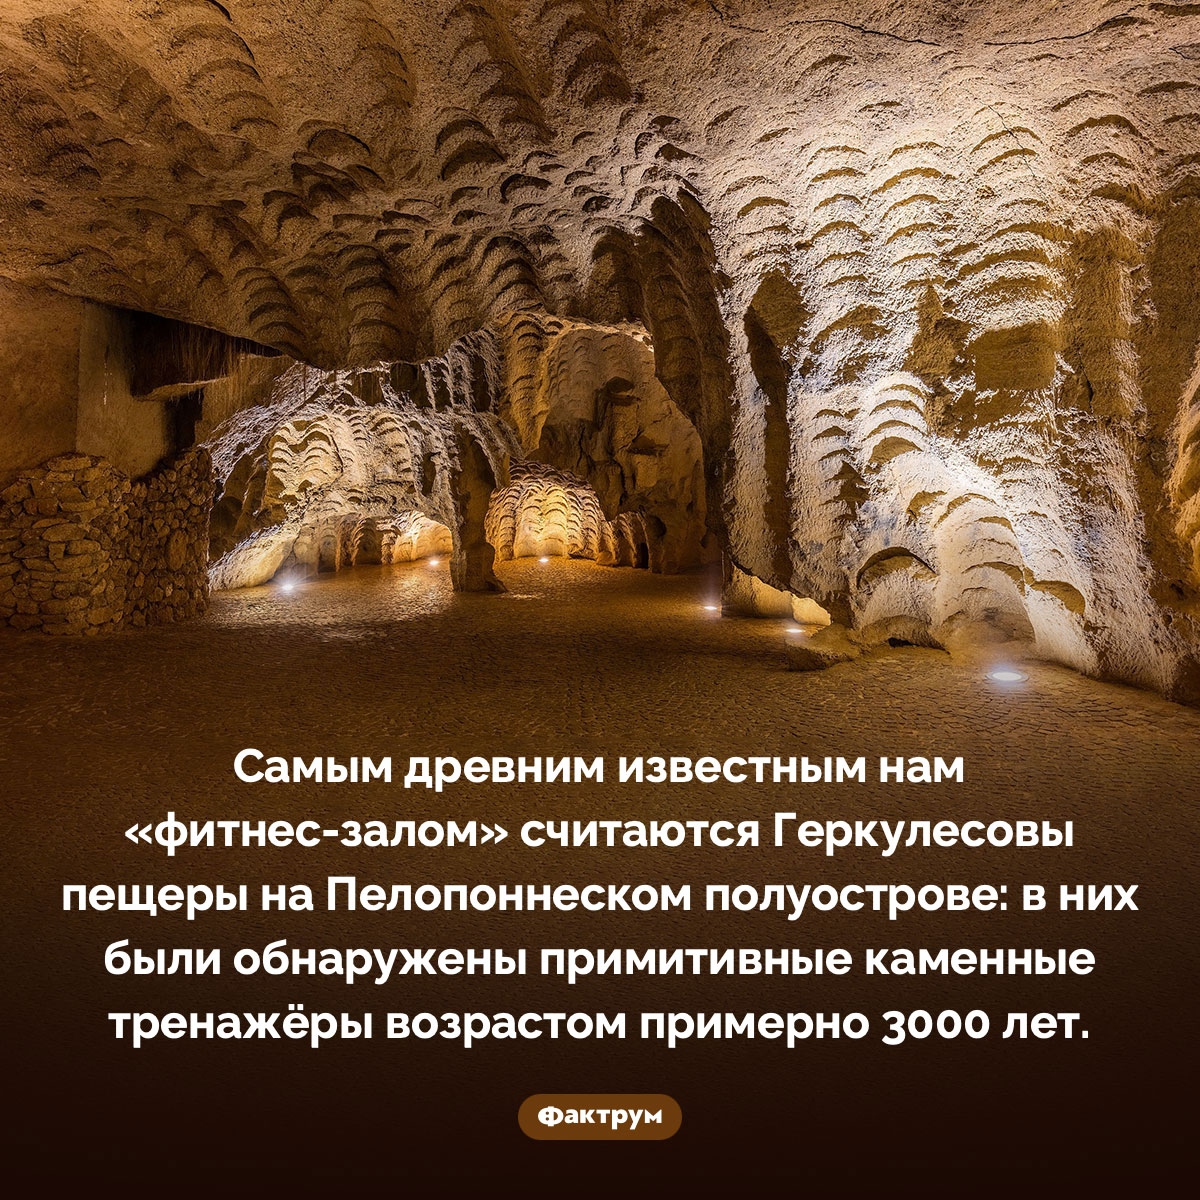 Самый древний фитнес-зал. Самым древним известным нам «фитнес-залом» считаются Геркулесовы пещеры на Пелопоннеском полуострове: в них были обнаружены примитивные каменные тренажёры возрастом примерно 3000 лет.